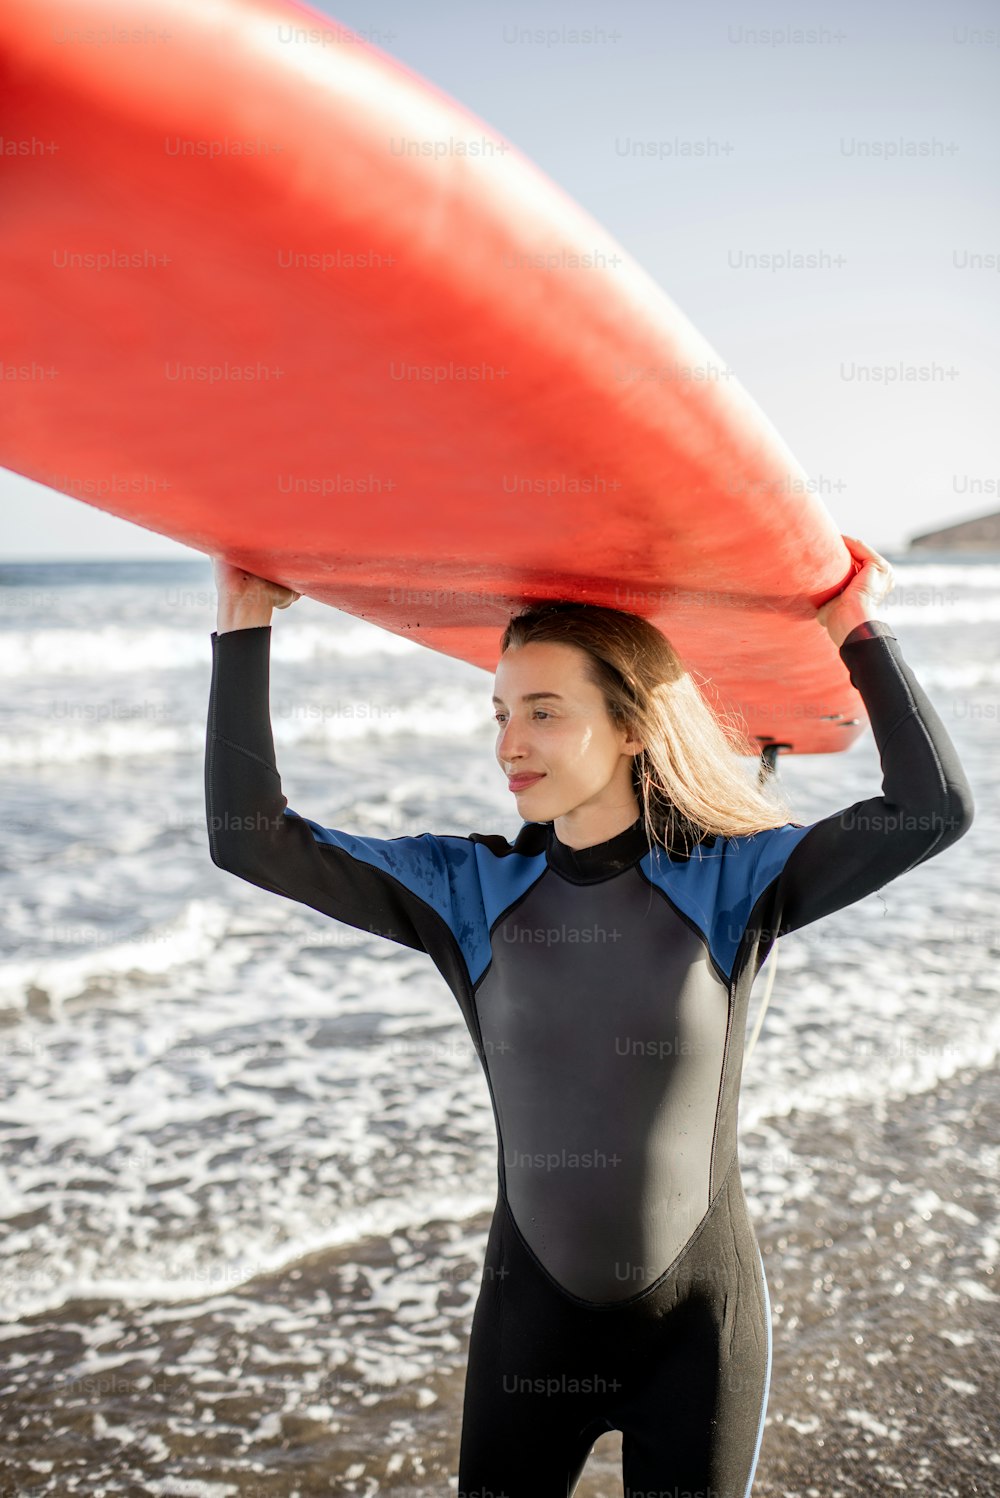 Retrato de una mujer joven en traje de neopreno que lleva el surboard por encima de la cabeza, preparándose para surfear en la playa salvaje en una puesta de sol. Concepto de estilo de vida activo